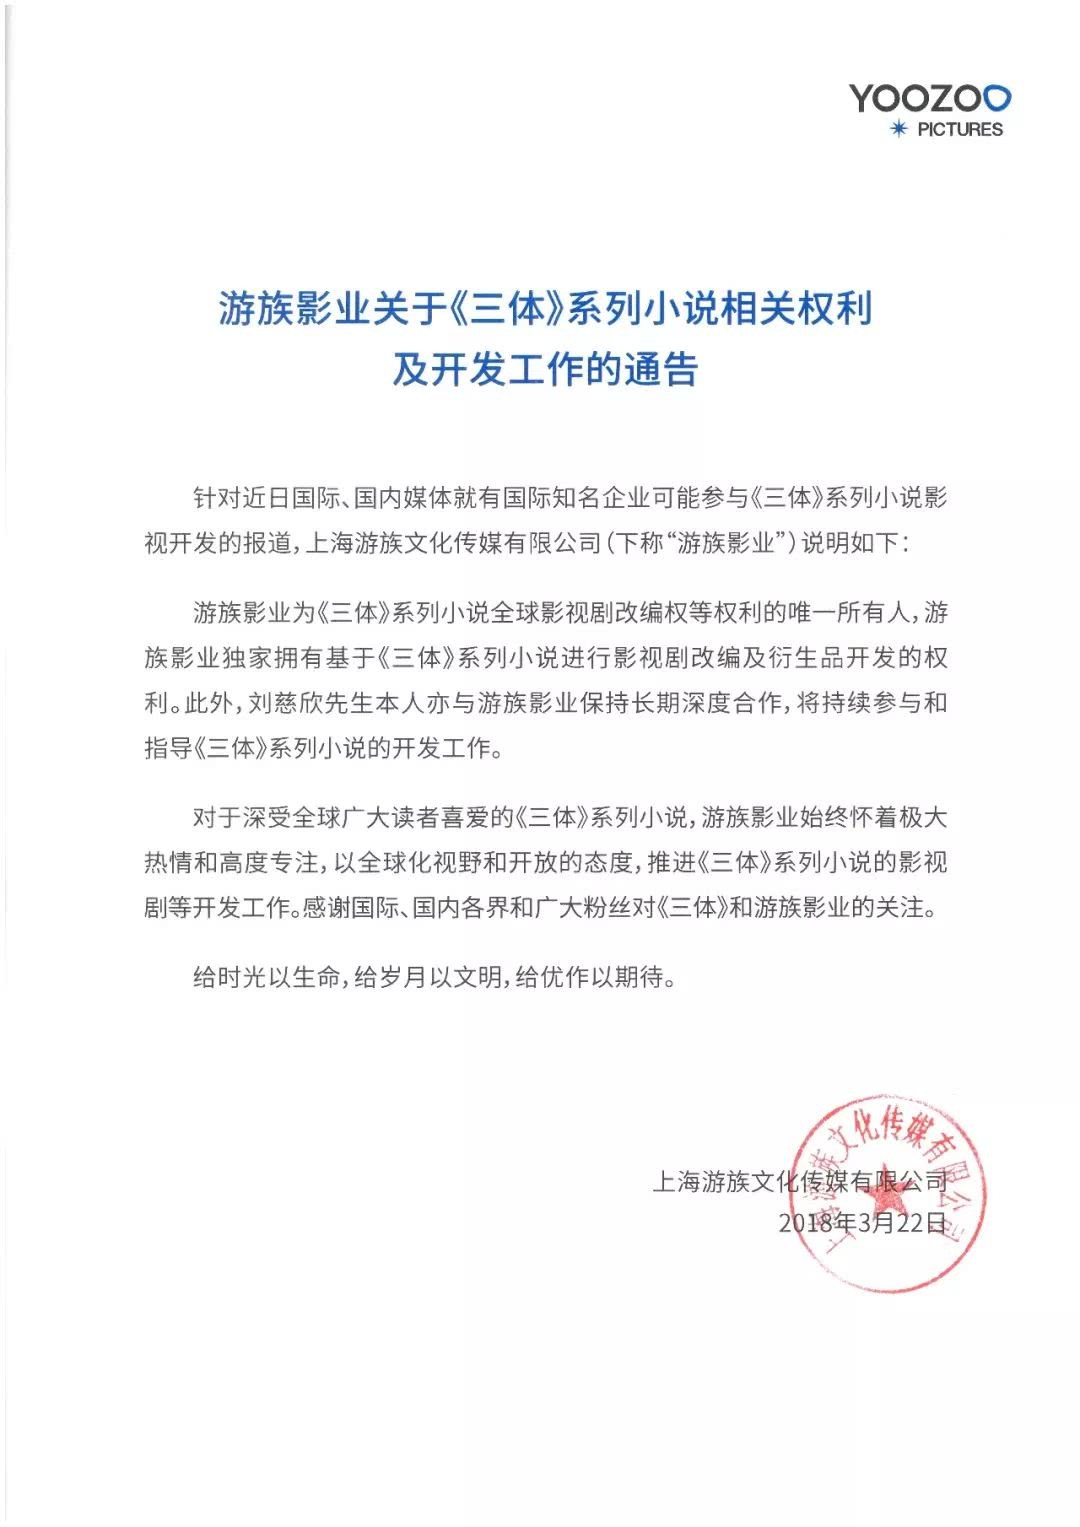 游族影业发布通告称：拥有《三体》全球改编权 刘慈欣深度参与开发